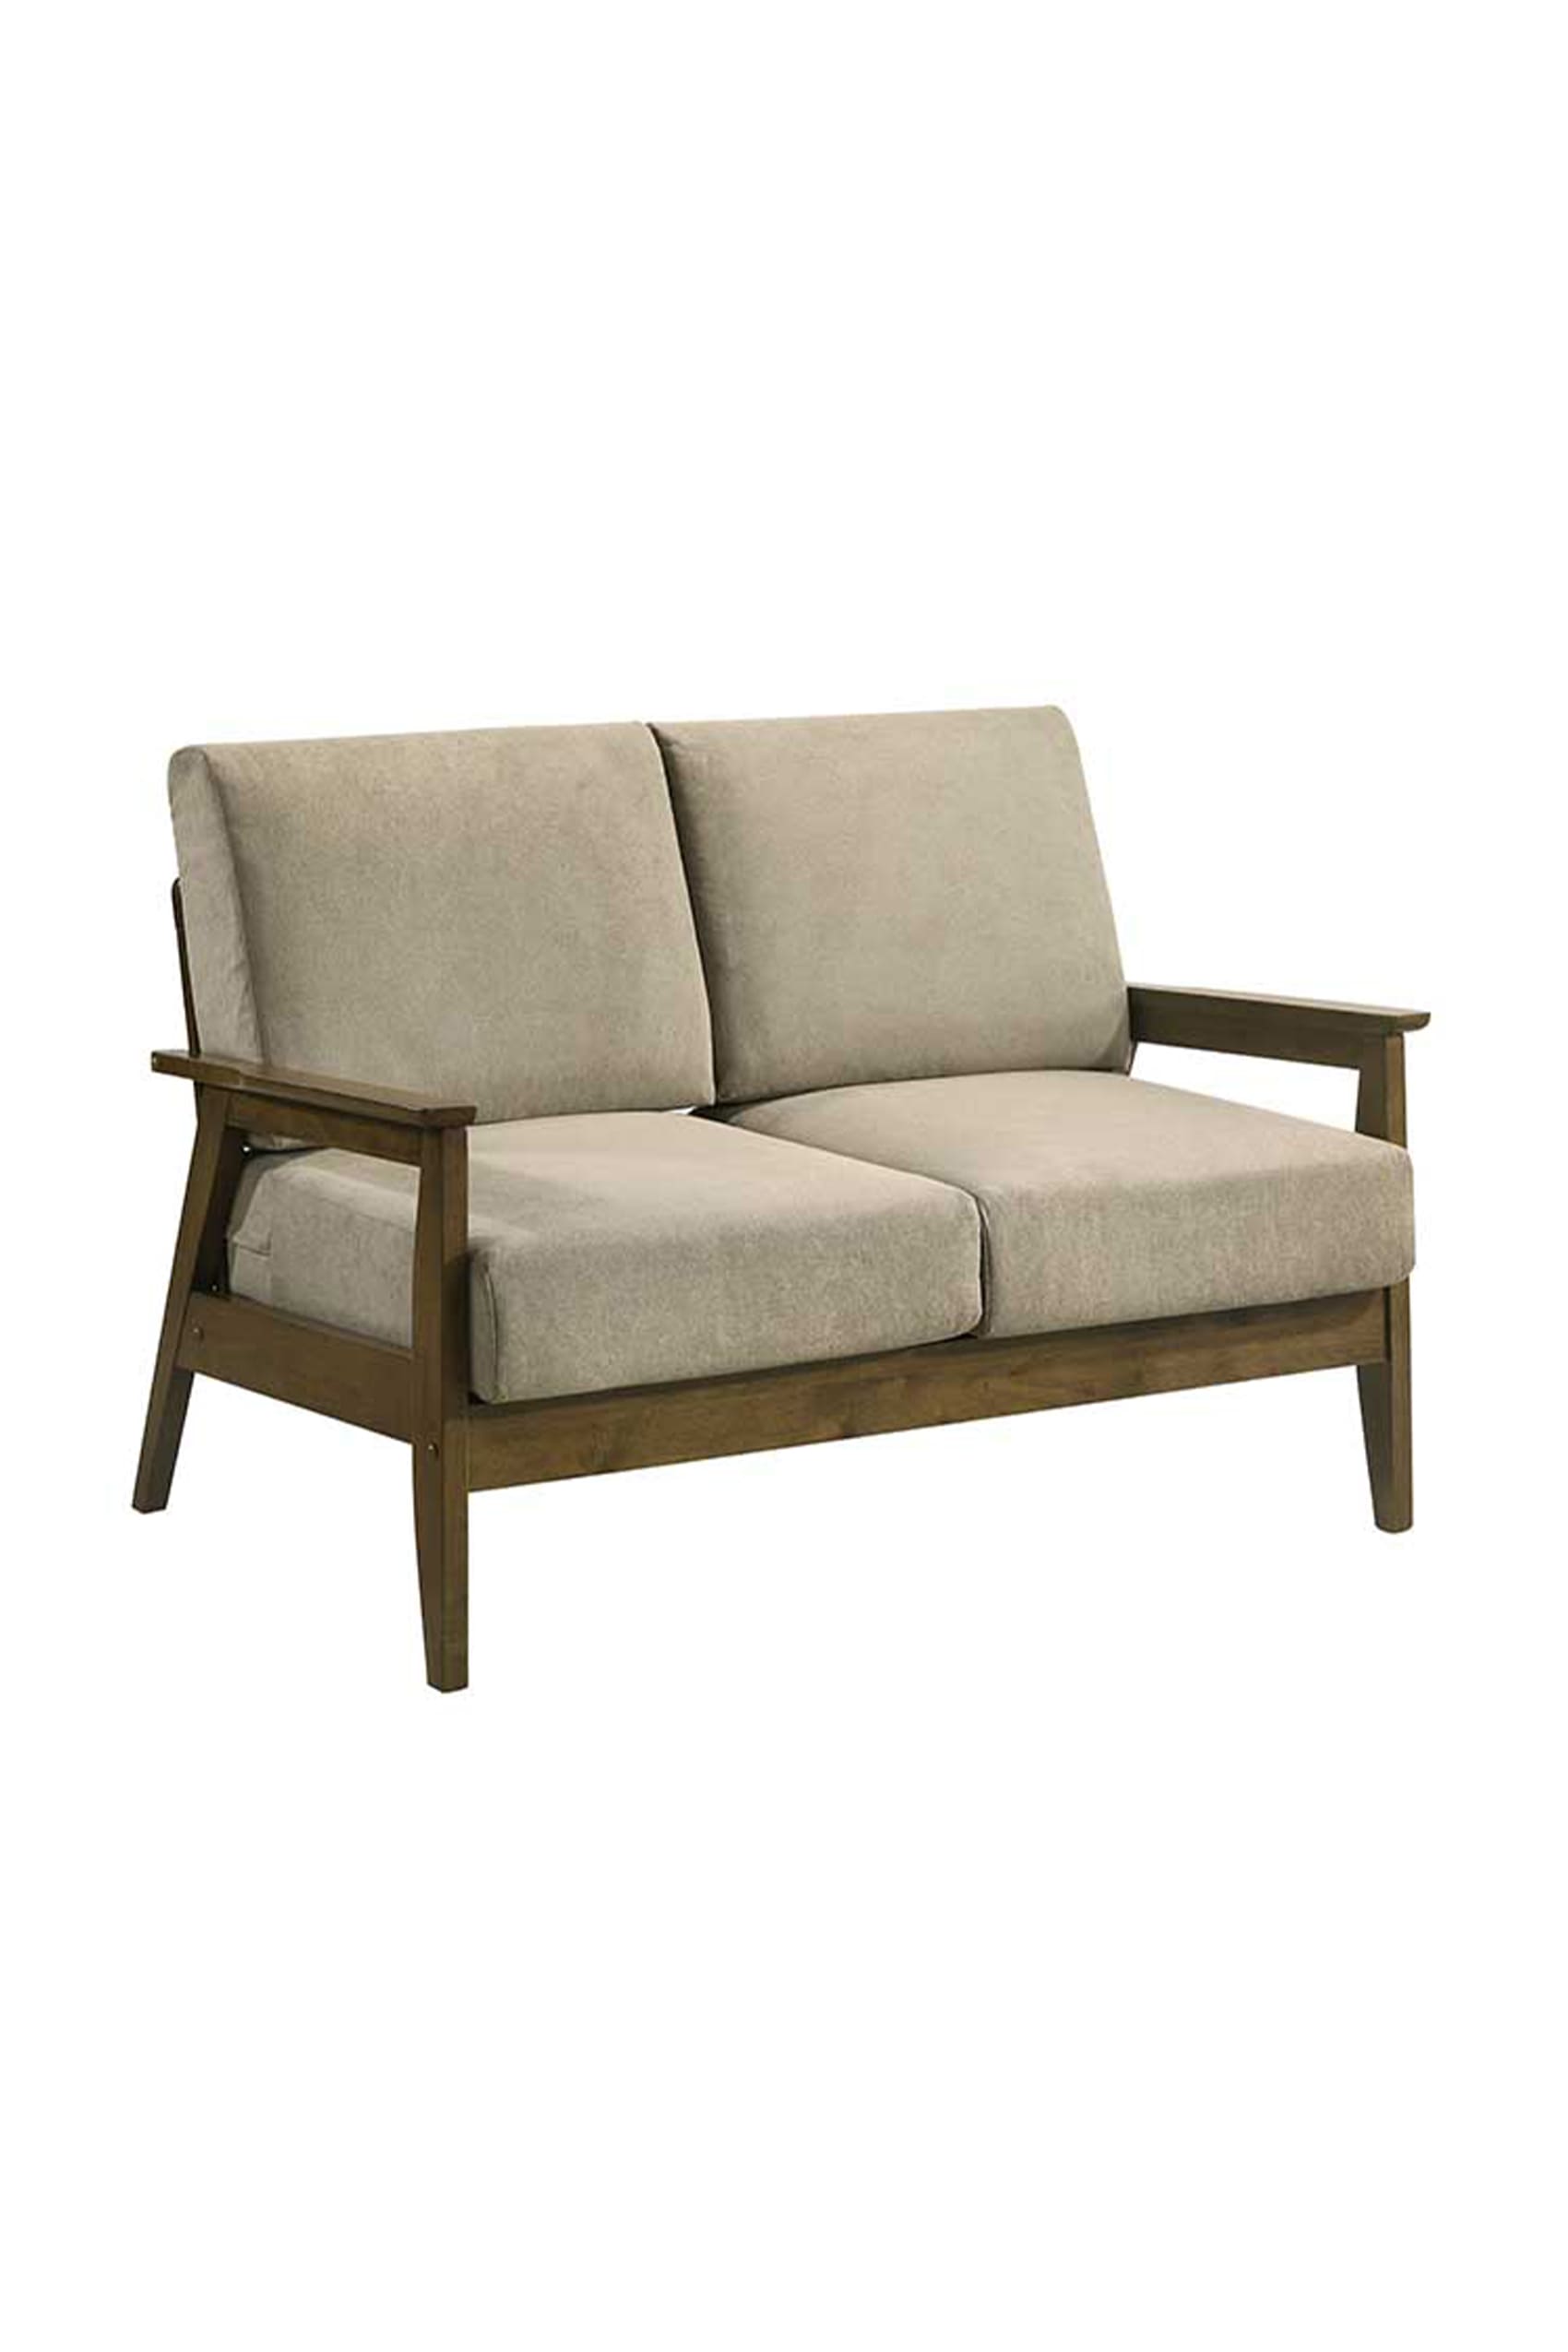 Orsaia Walnut 2 Seater Sofa